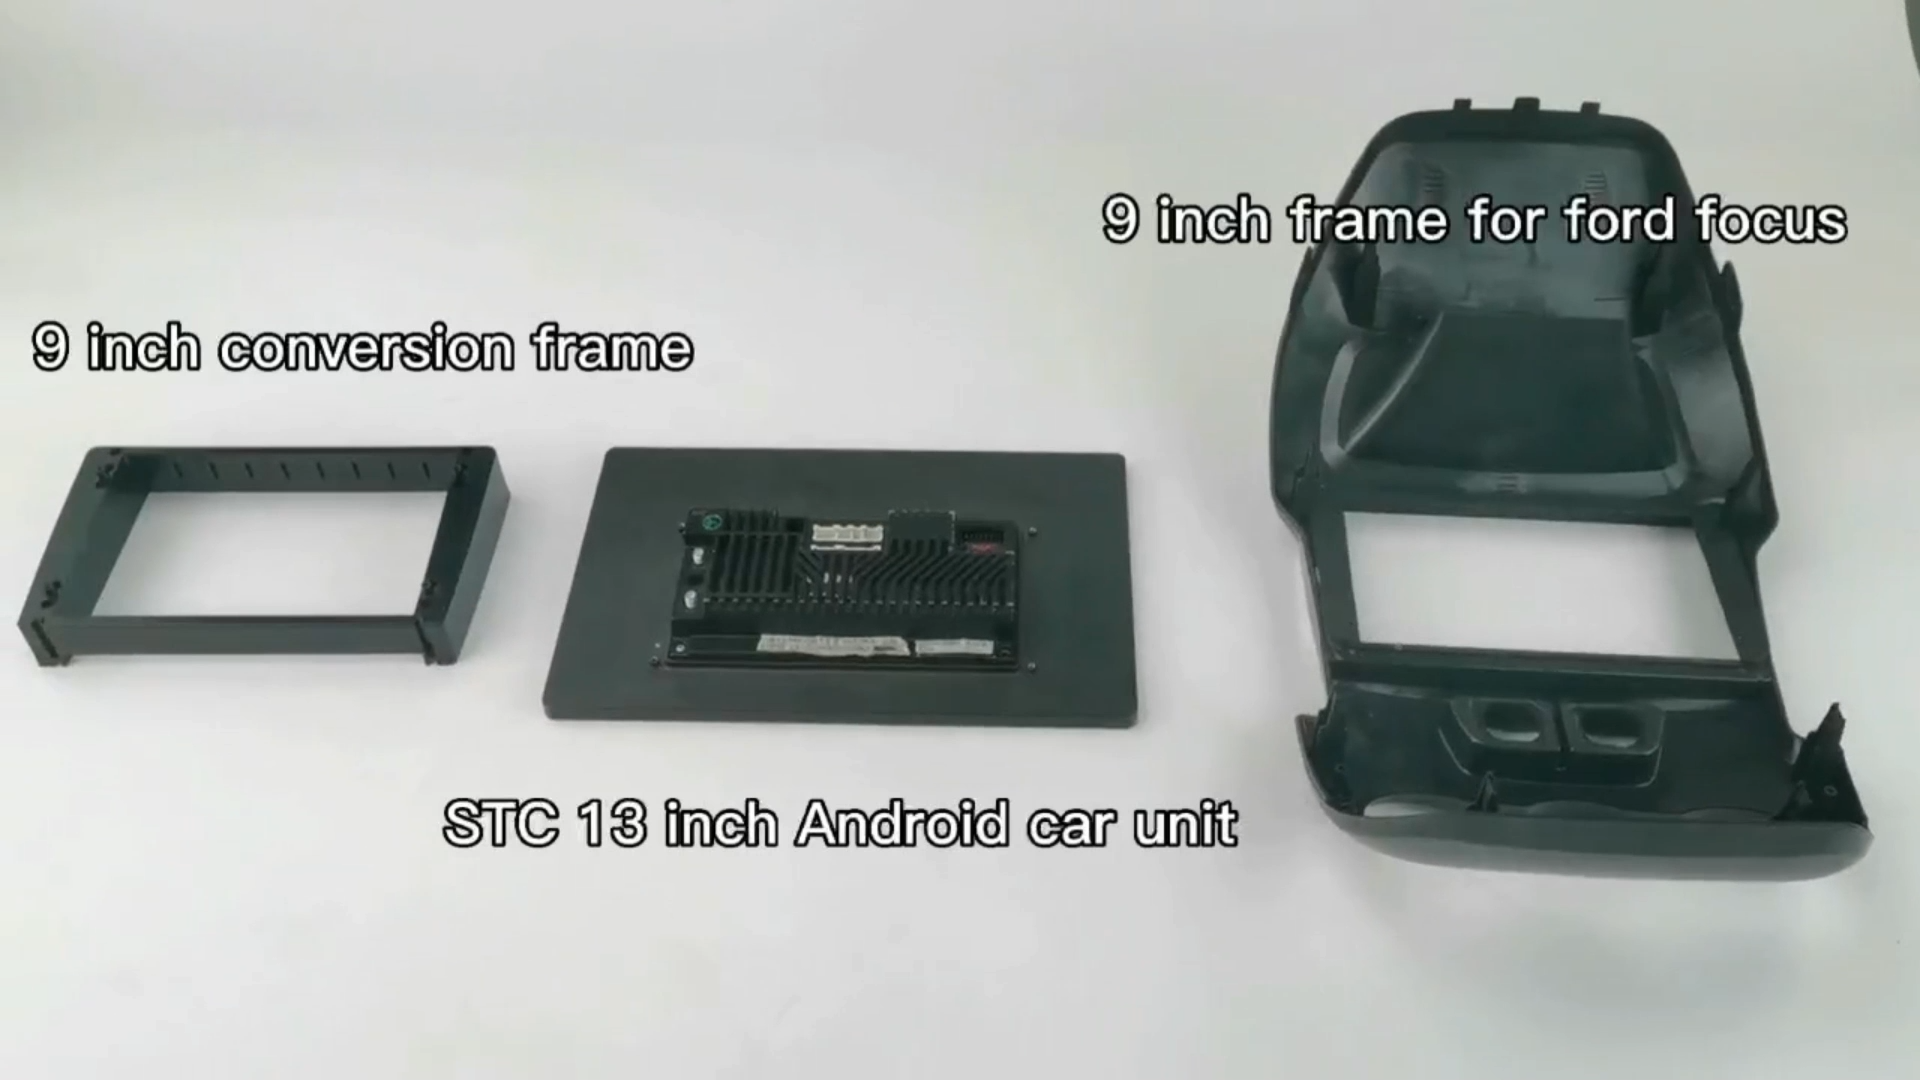 وصول جديد 13 بوصة نظام التشغيل Android متعدد الوظائف عالي الدقة عالي الوضوح لبيع الأجهزة الساخنة فيديو السيارة بواسطة راديو السيارات بدقة 1080p ونظام تحديد المواقع العالمي (GPS) بنظام Android Car DVD Player الصوت